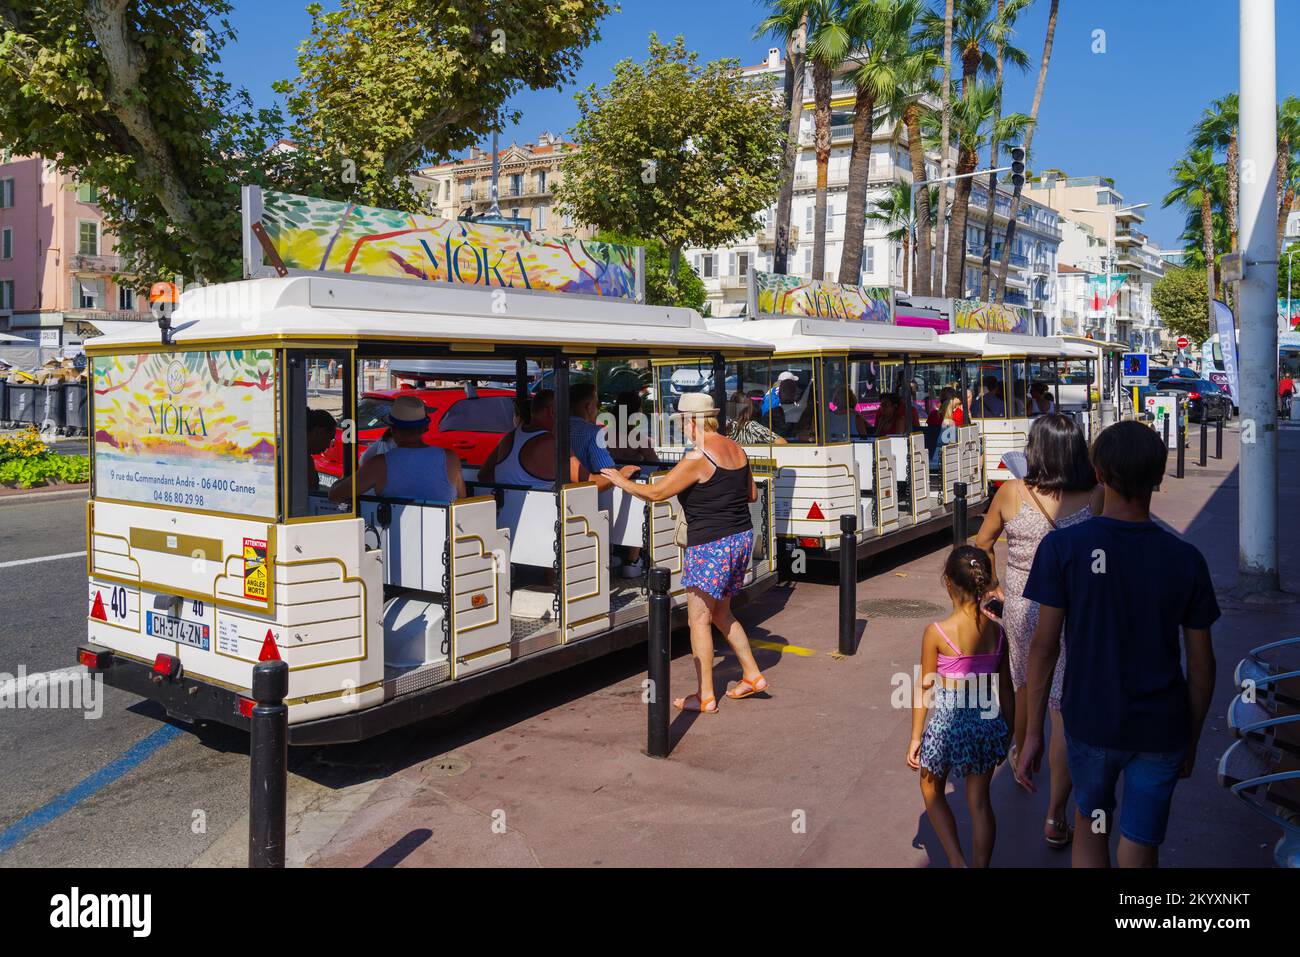 CANNES, FRANCIA - 8 DE AGOSTO de 2022: Transporte público turístico en el centro de Cannes Foto de stock